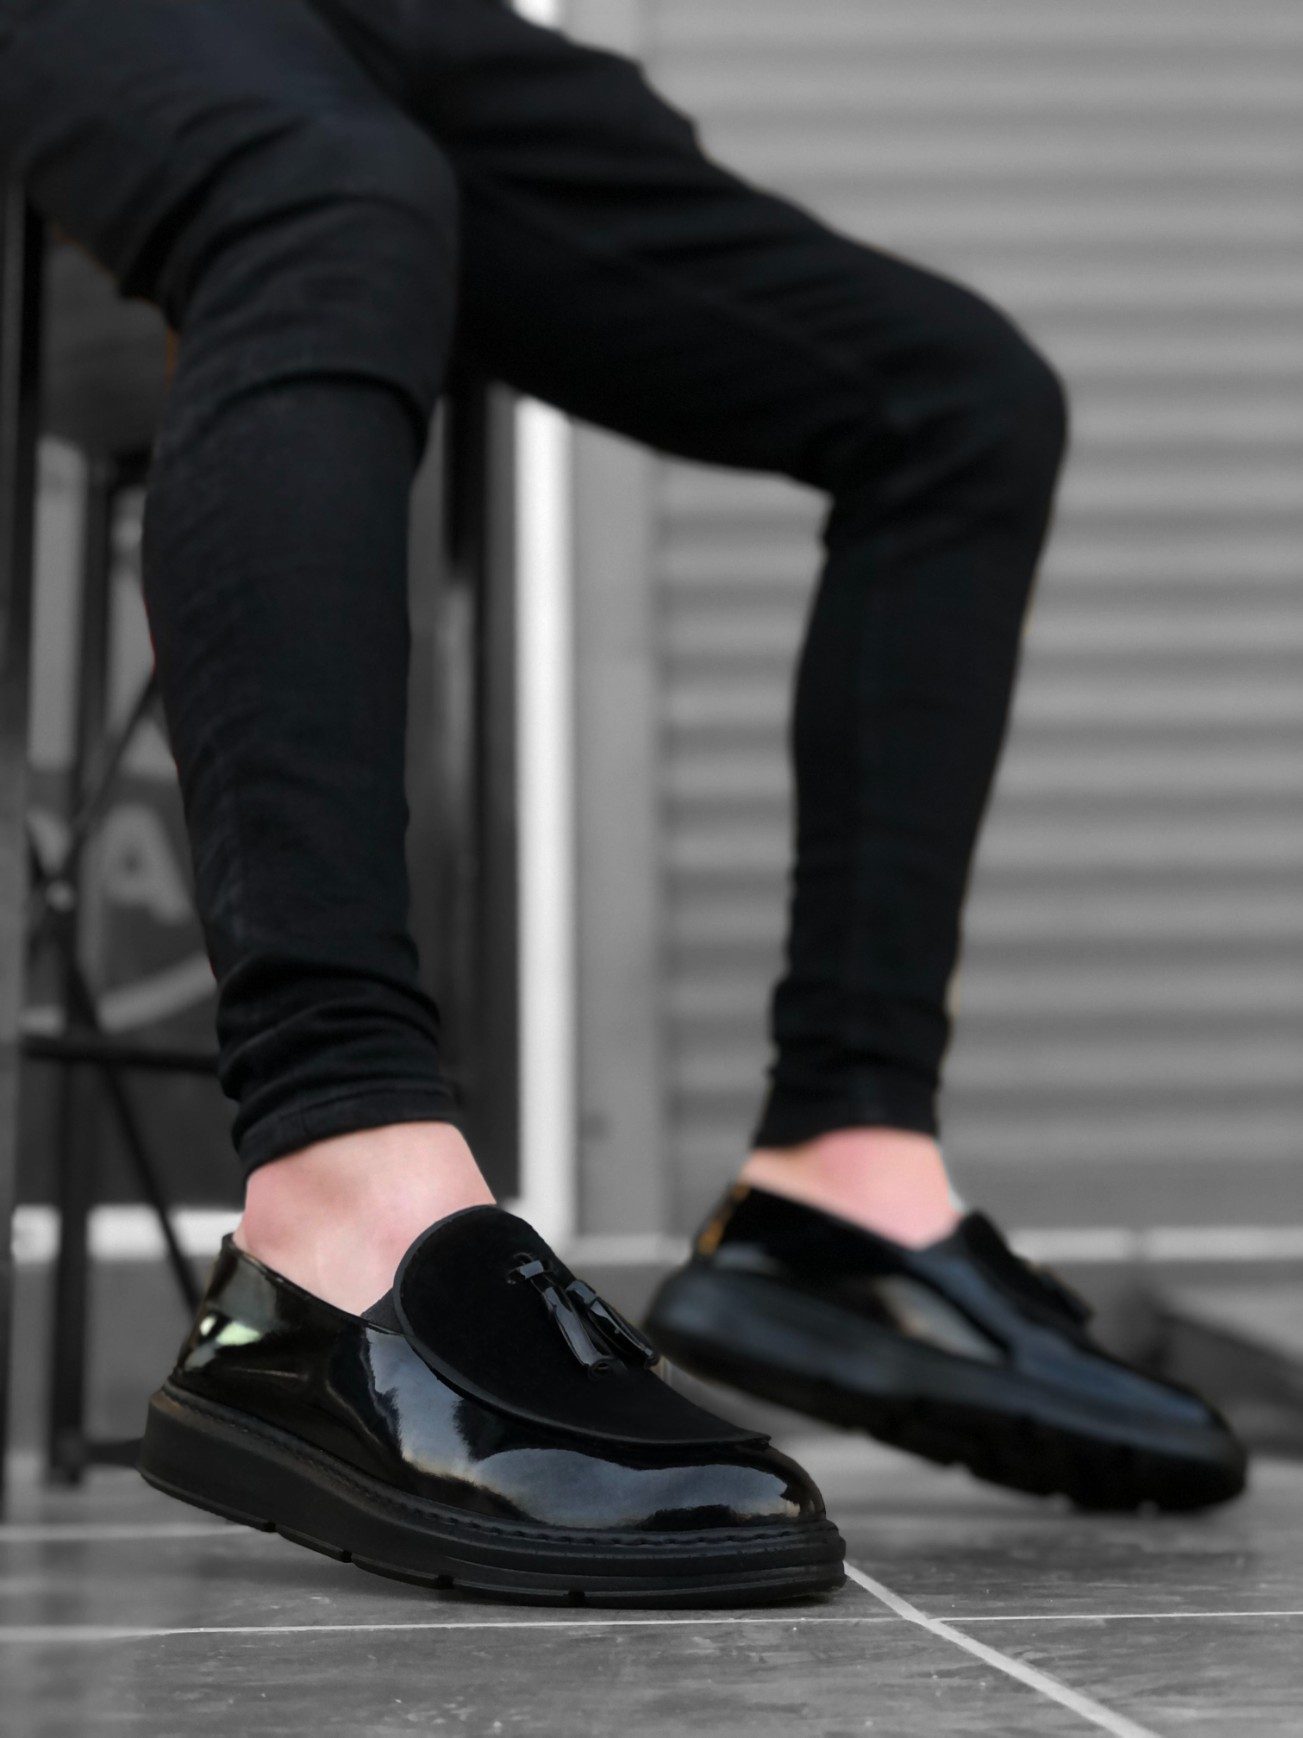 CLZ946 Bağcıksız Yüksek Taban Siyah Taban Klasik Süet Detaylı Püsküllü Corcik Erkek Ayakkabı